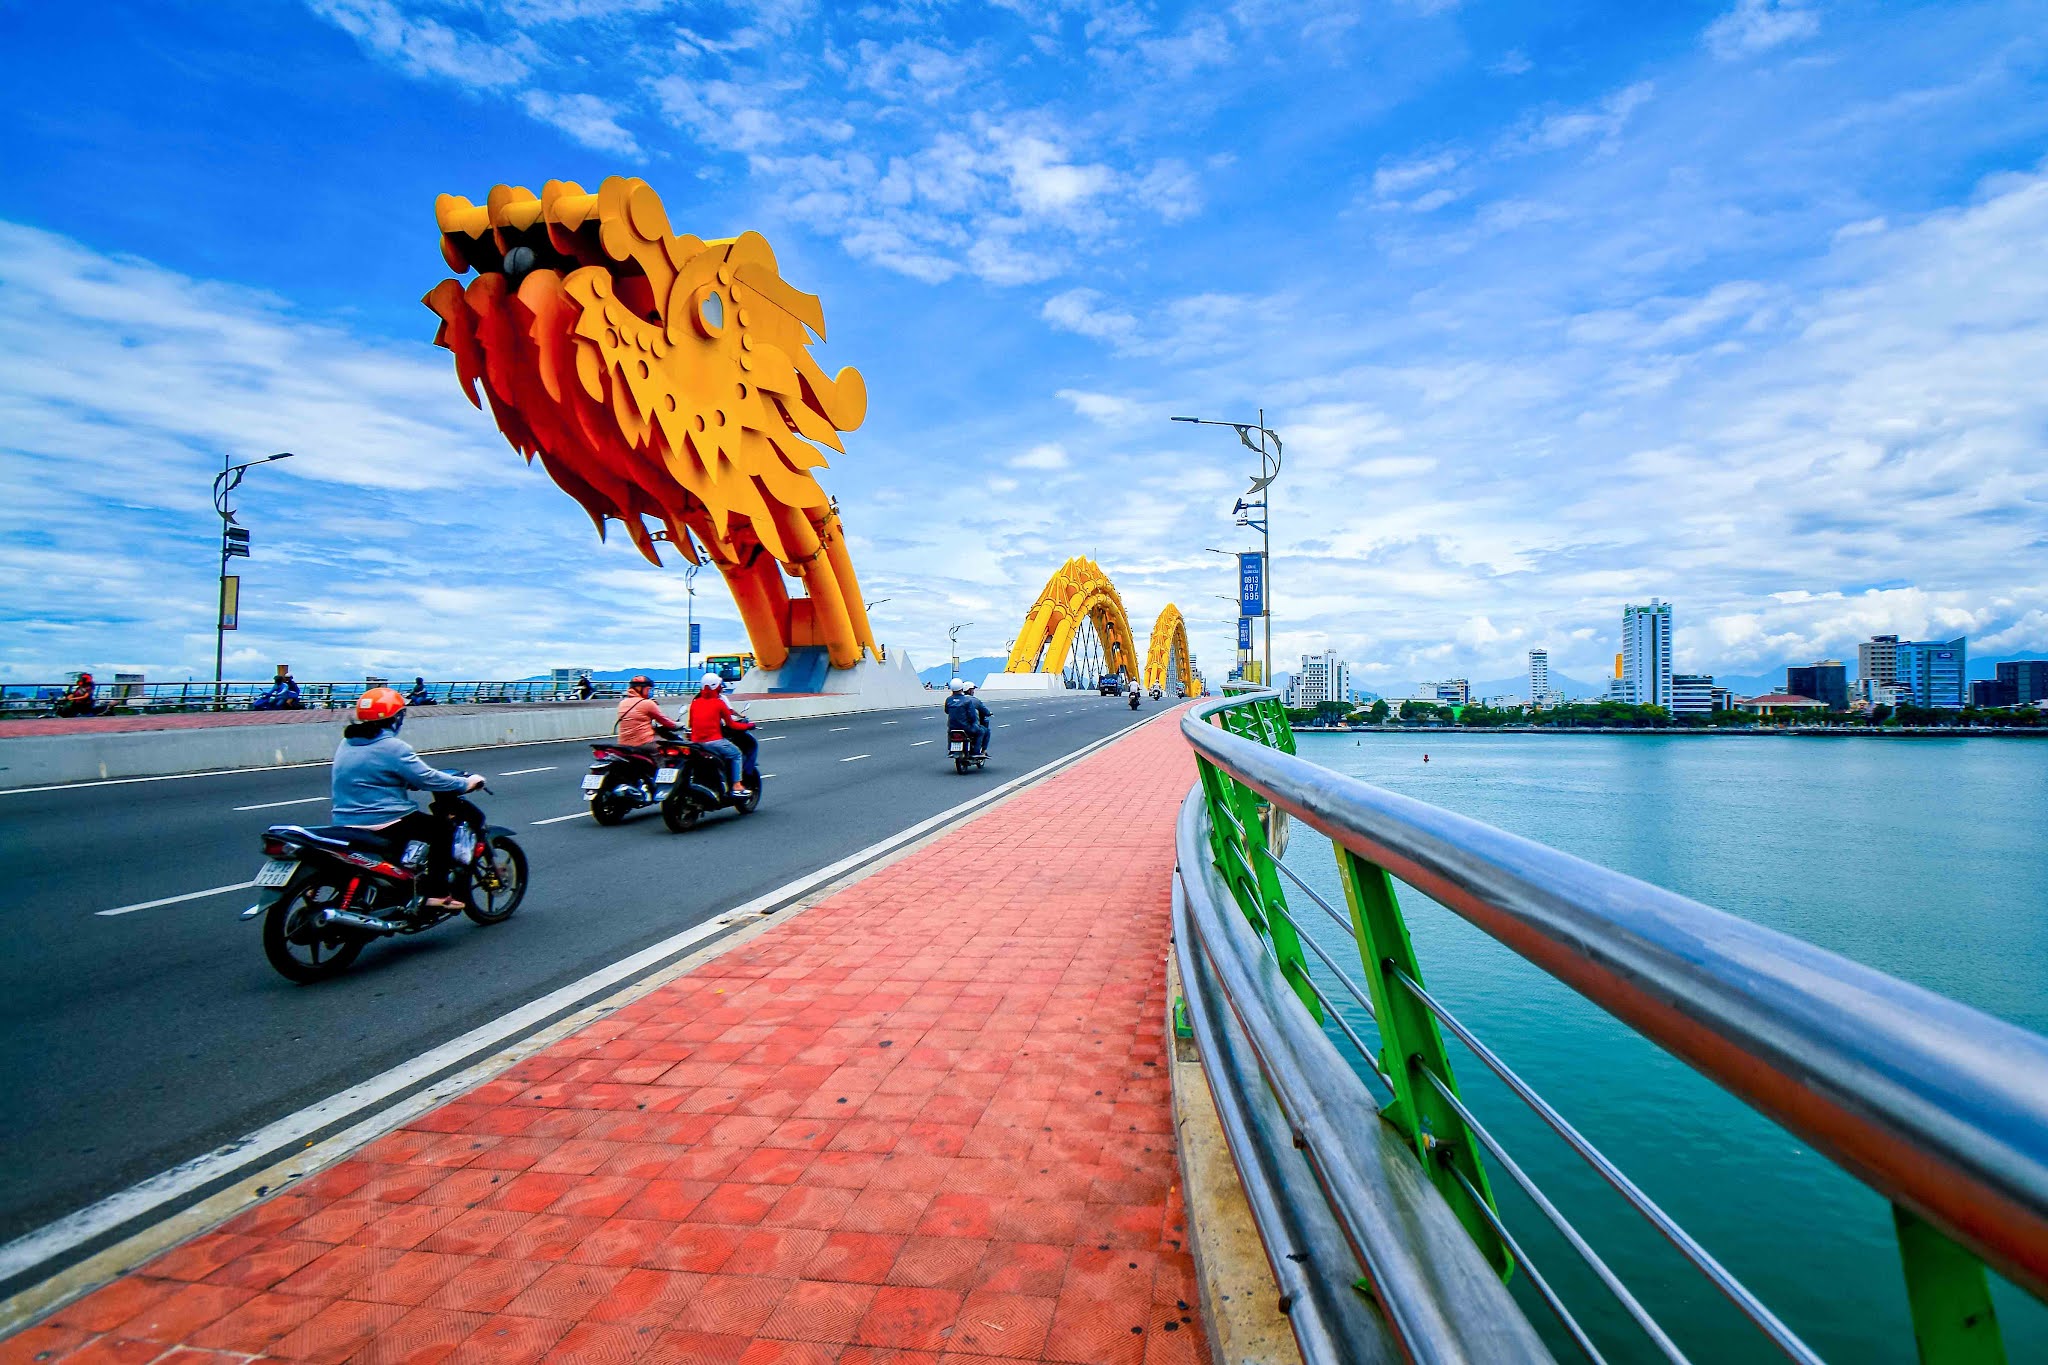 Cầu Rồng Đà Nẵng vào một ngày thời tiết trong xanh. Hình ảnh: Khoi Studio.